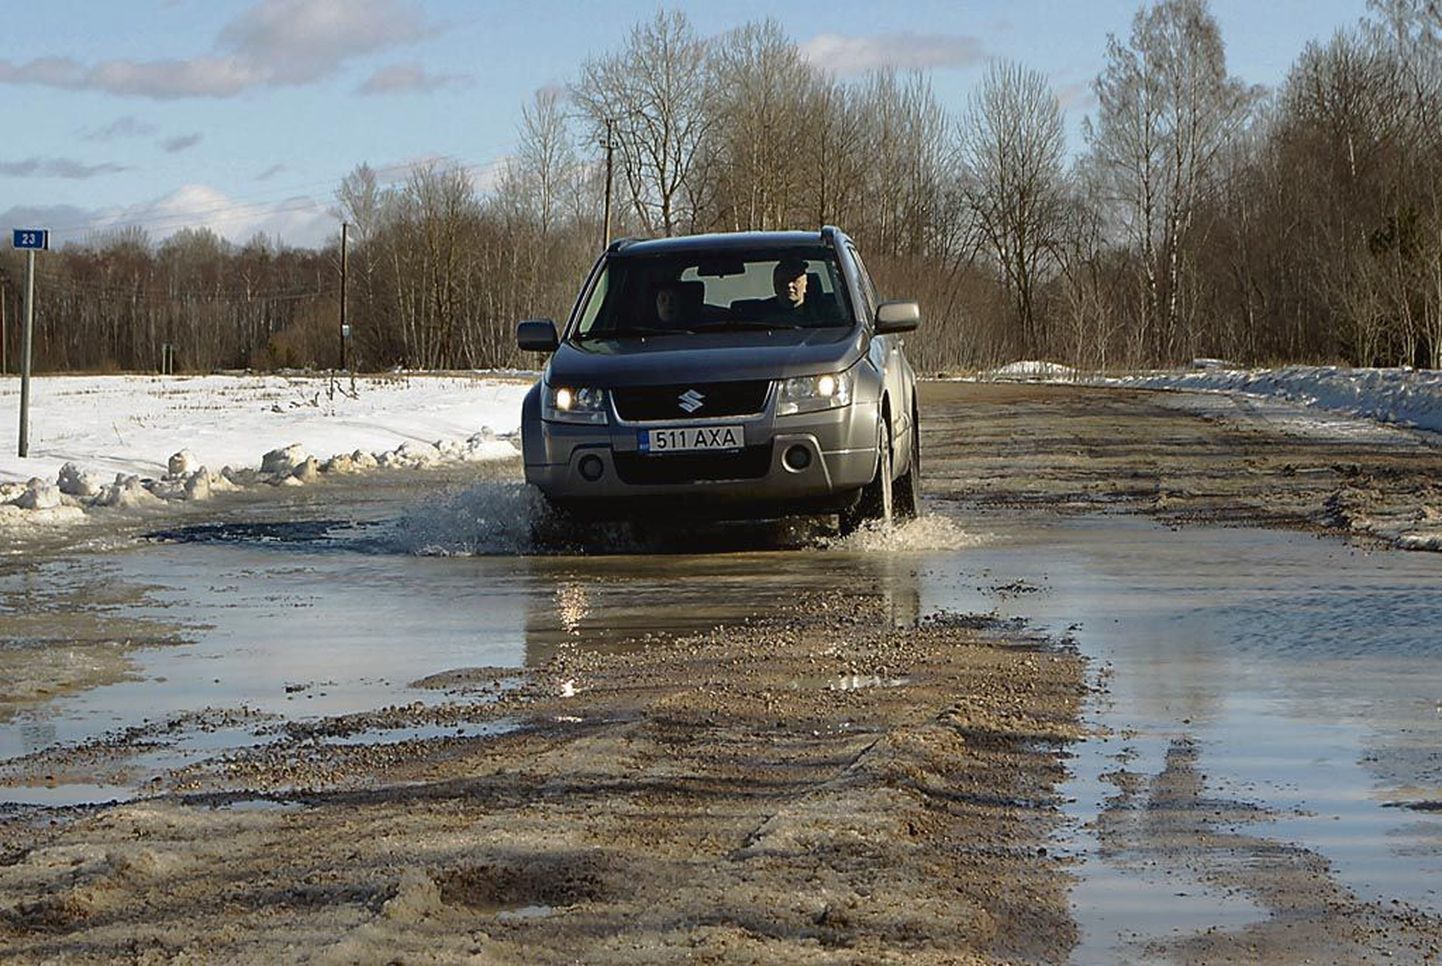 Pärnu maakonnas on ligi 600 kilomeetrit riigile kuuluvaid kruusateid. Lumesulamise ajal võtavad need kohati järve mõõtmed, millest läbisõitmine autoga on risk. Sama teed Pärnu-Jaagupi - Kalli vahel sõidavad ka liinibussid.